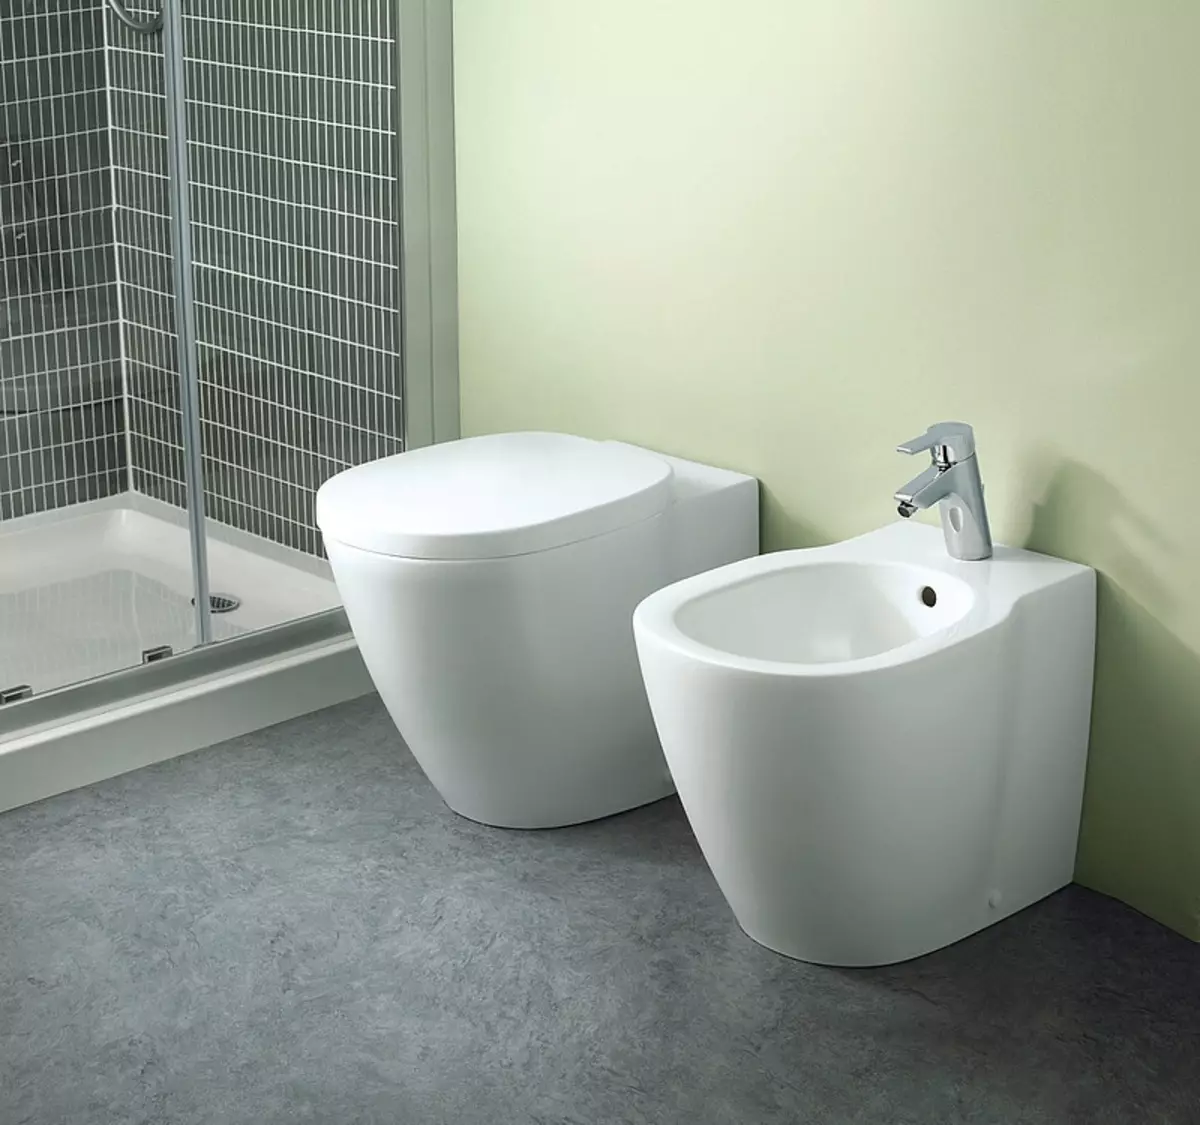 स्नानगृह डिझाइन 5 केव्ही. एम (111 फोटो): वॉशिंग मशीनसह आधुनिक इंटीररमध्ये सुंदर बाथरुमचे 5 स्क्वेअर मीटरचे प्रकल्प 10205_75